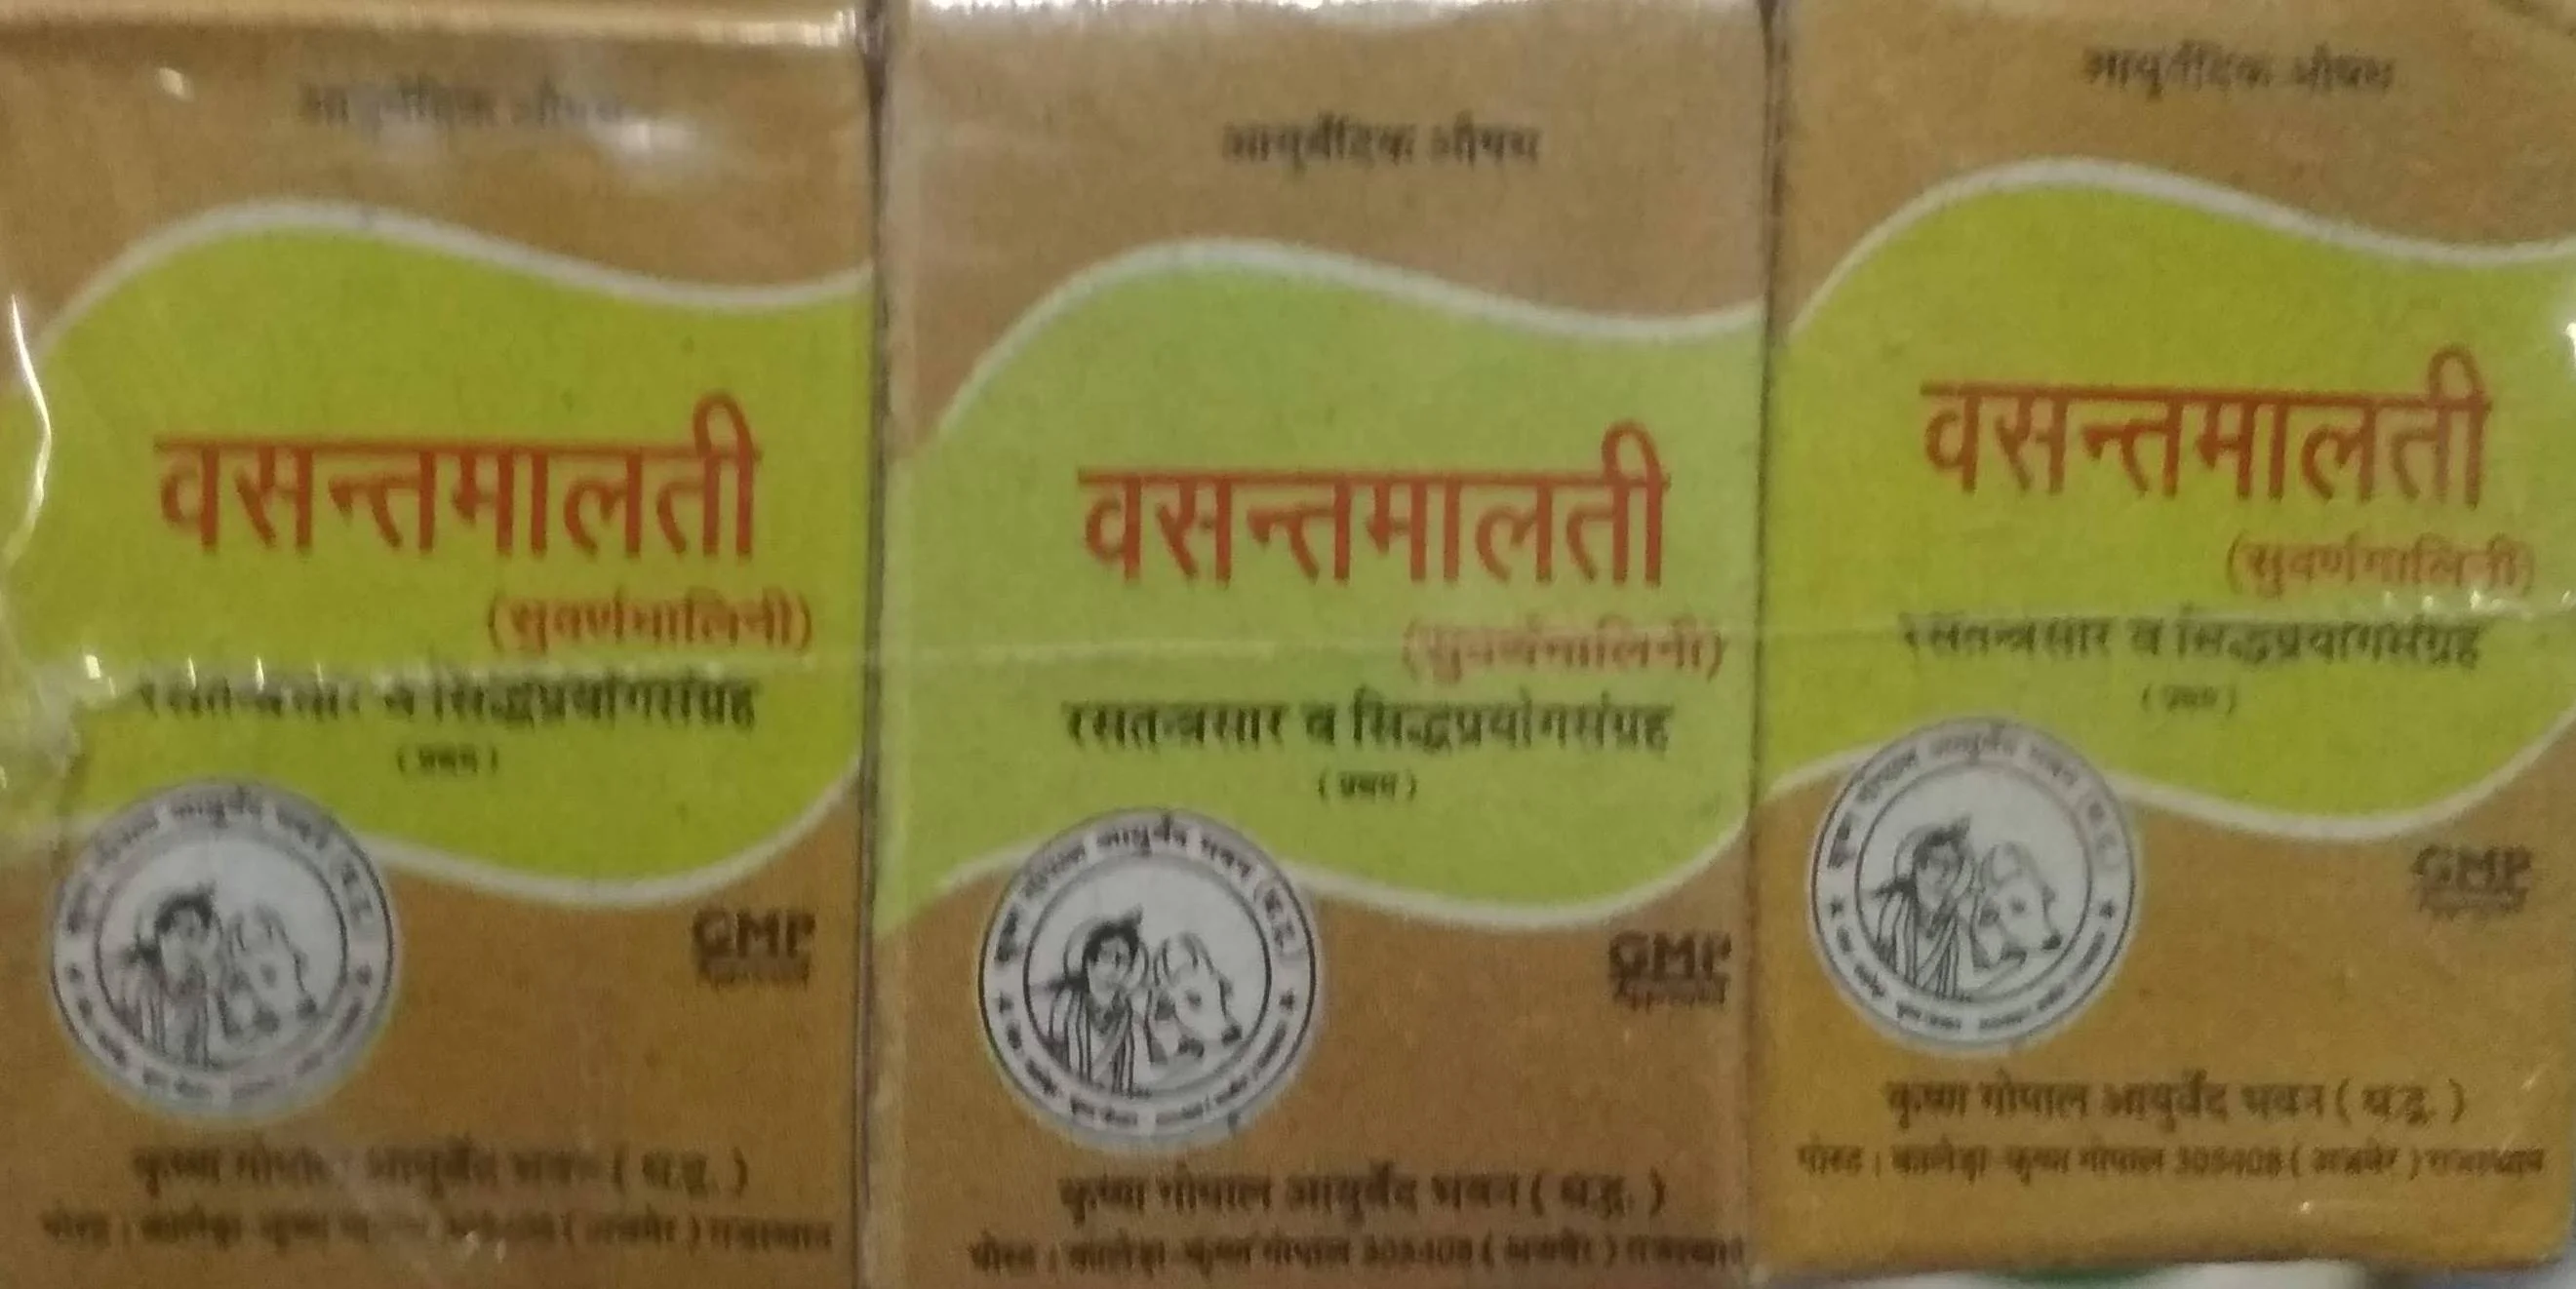 Vasant malati ras swarna yukt 2 gm upto 20% off Krishna Gopal Ayurved bhavan